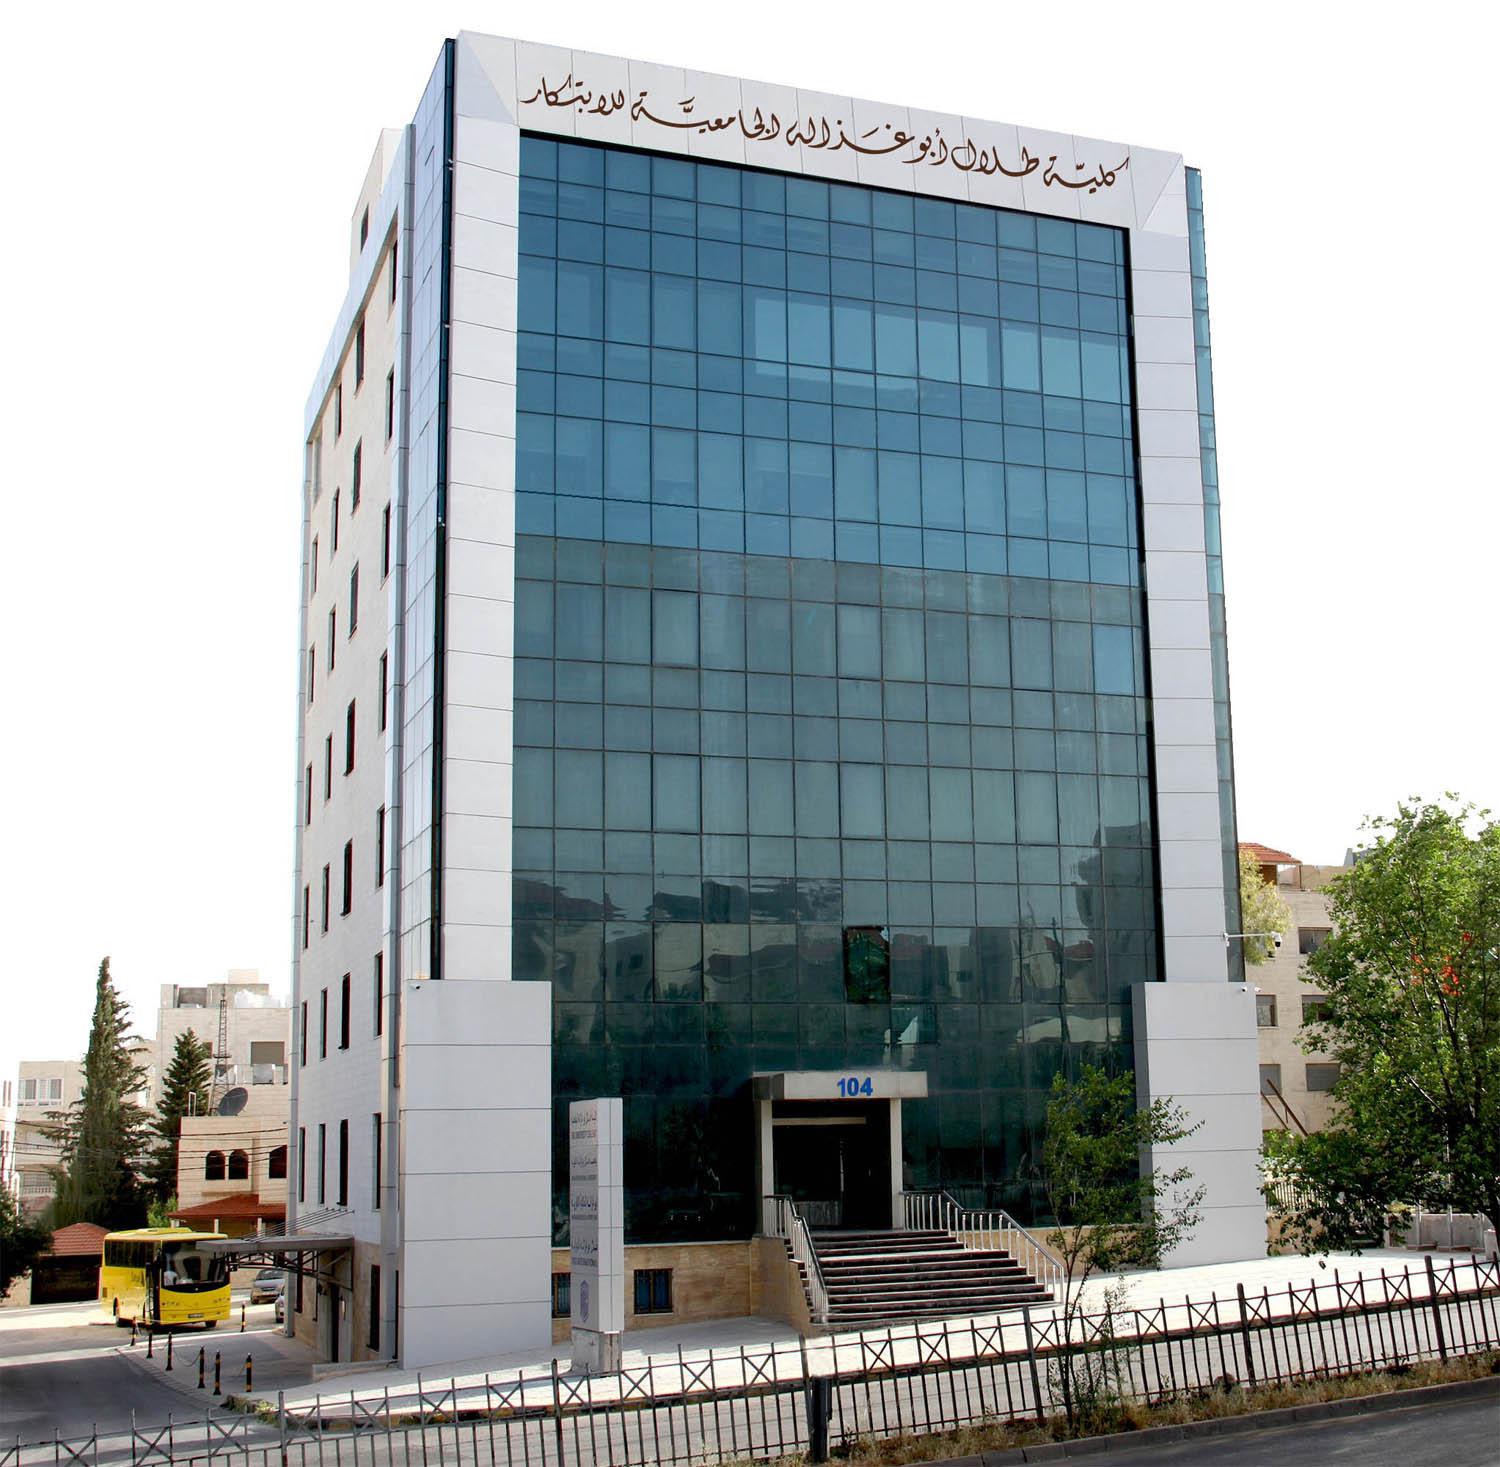 كلية طلال ابو غزالة الجامعية للابتكار في الأردن